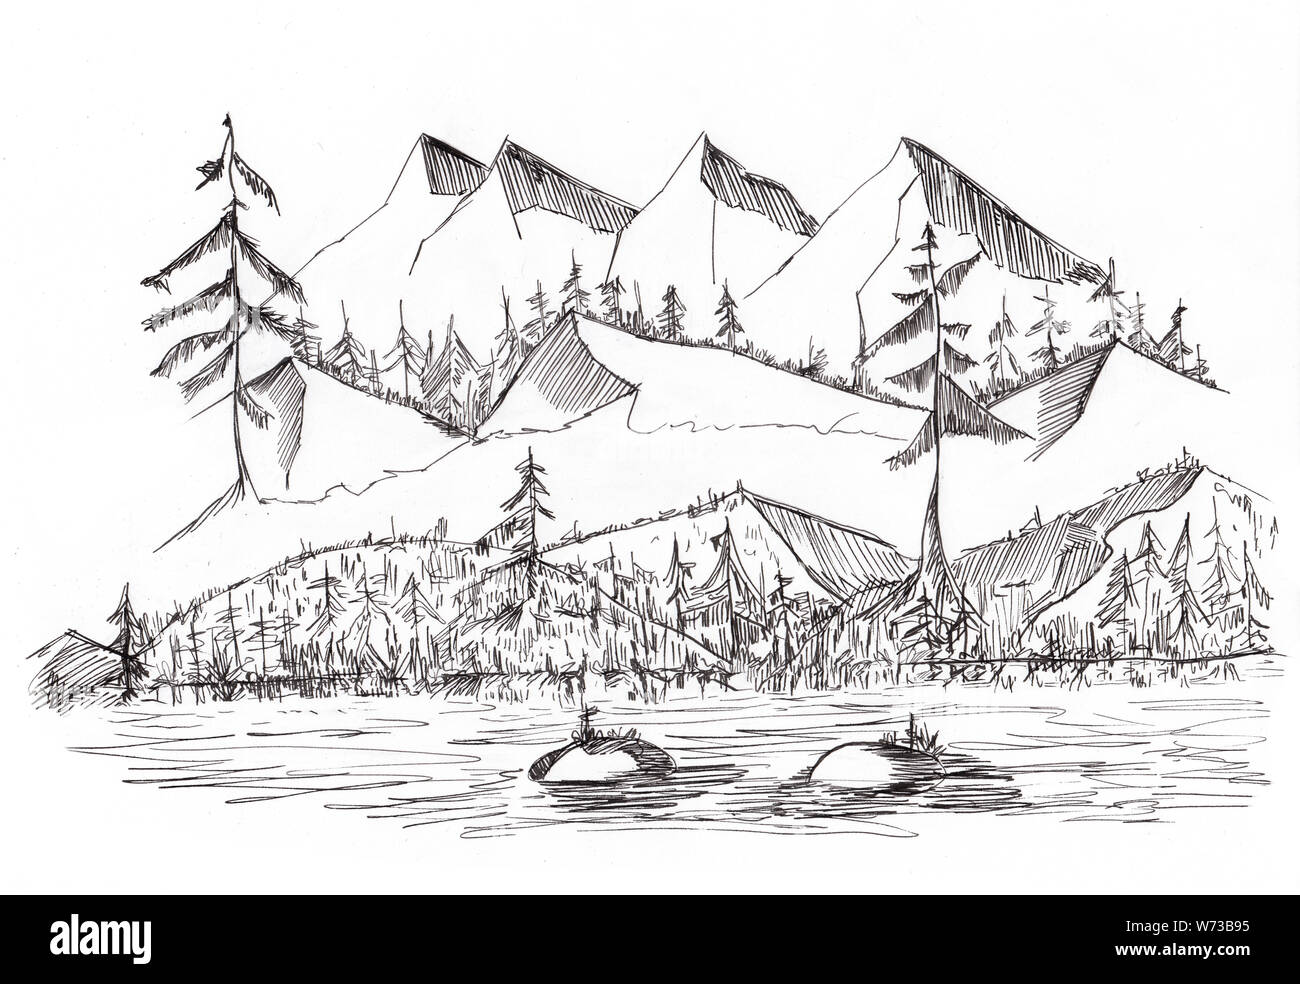 Croquis del agreste paisaje con montañas Hill y Río, ilustración dibujada a mano con tinta Foto de stock